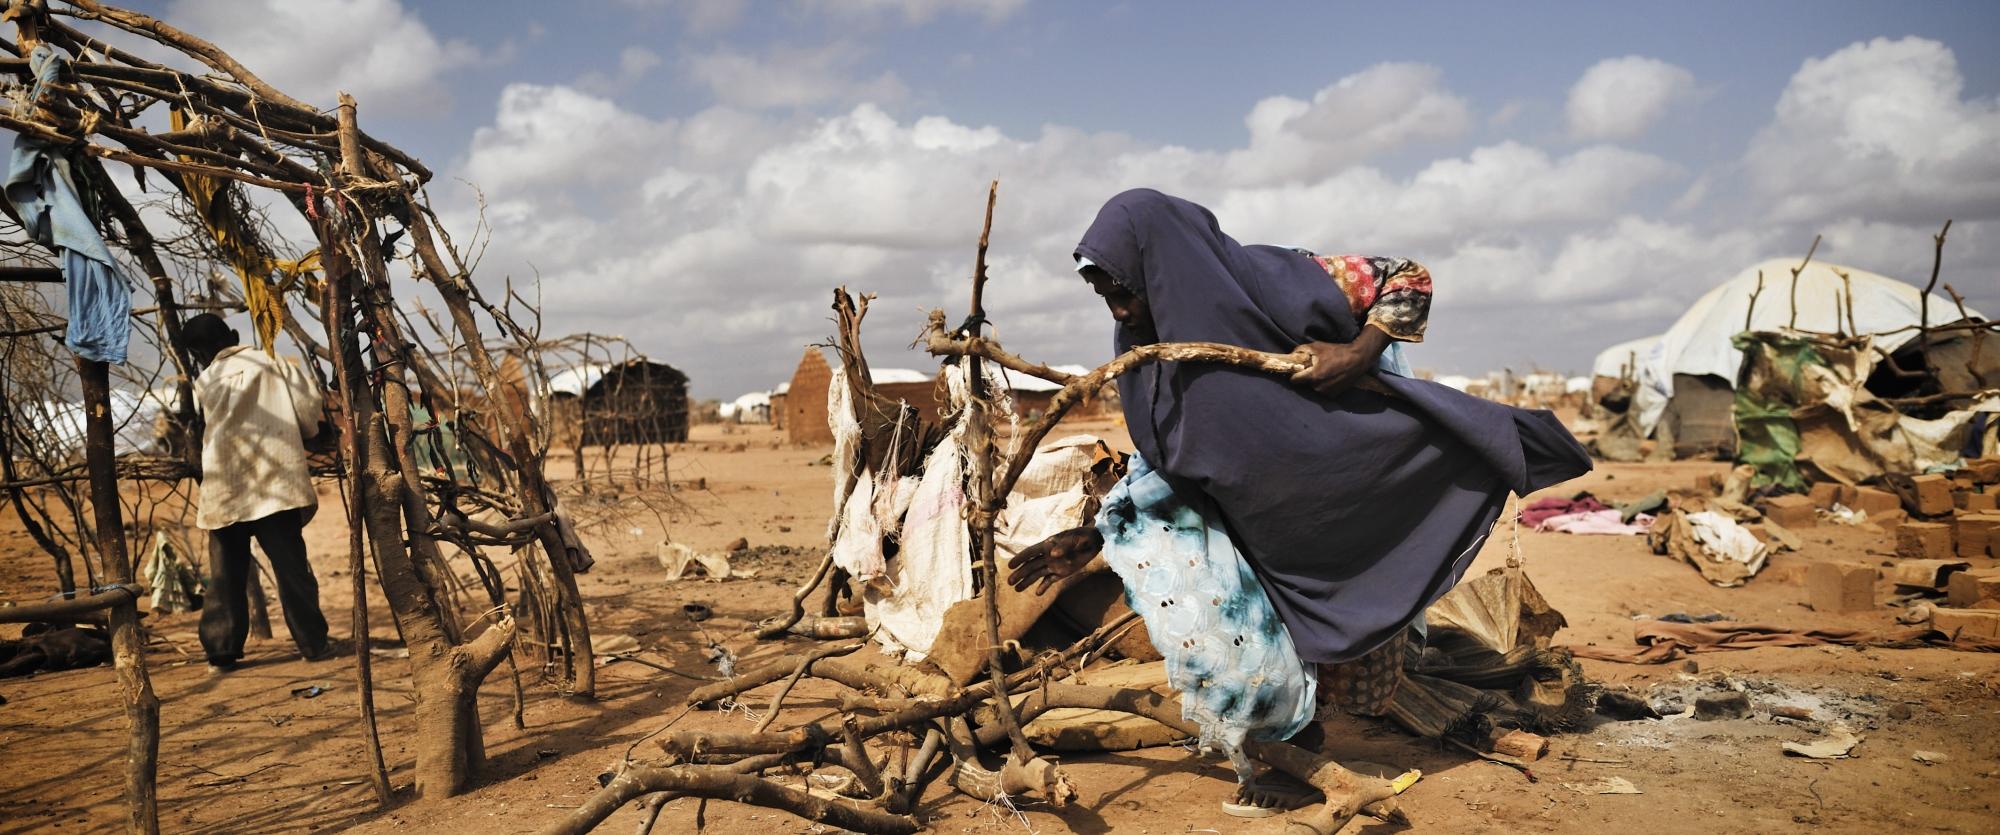 Des réfugiés somaliens et leur abri de fortune à la périphérie du camp de Dagahaley à Dadaab, au Kenya. Octobre 2011